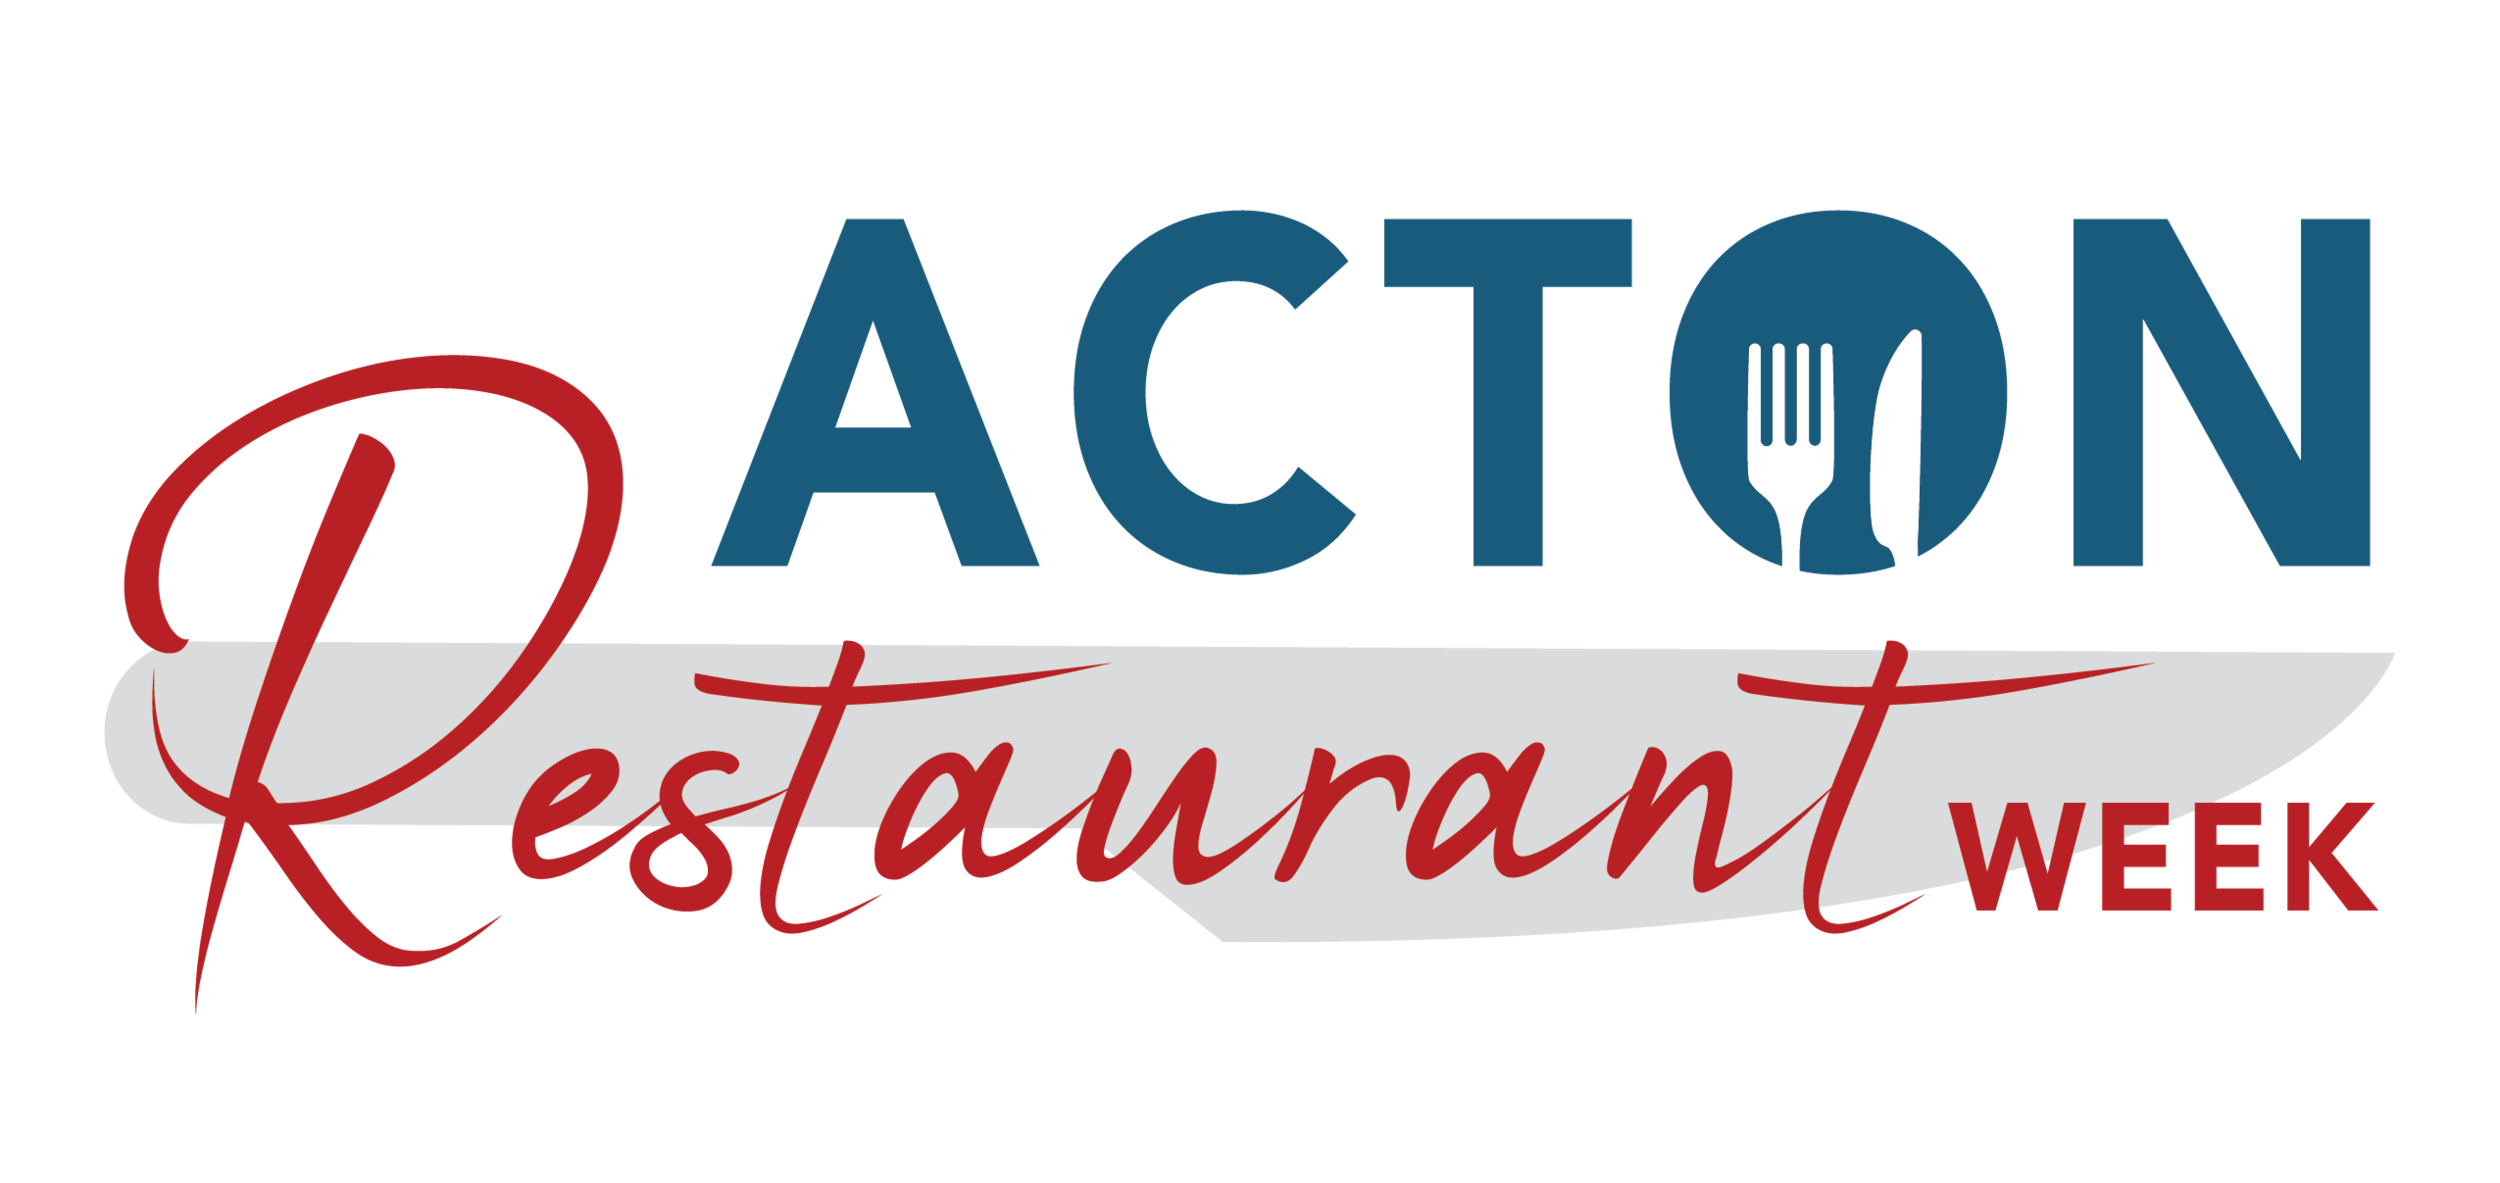 Acton Restaurant Week Logo-01.png